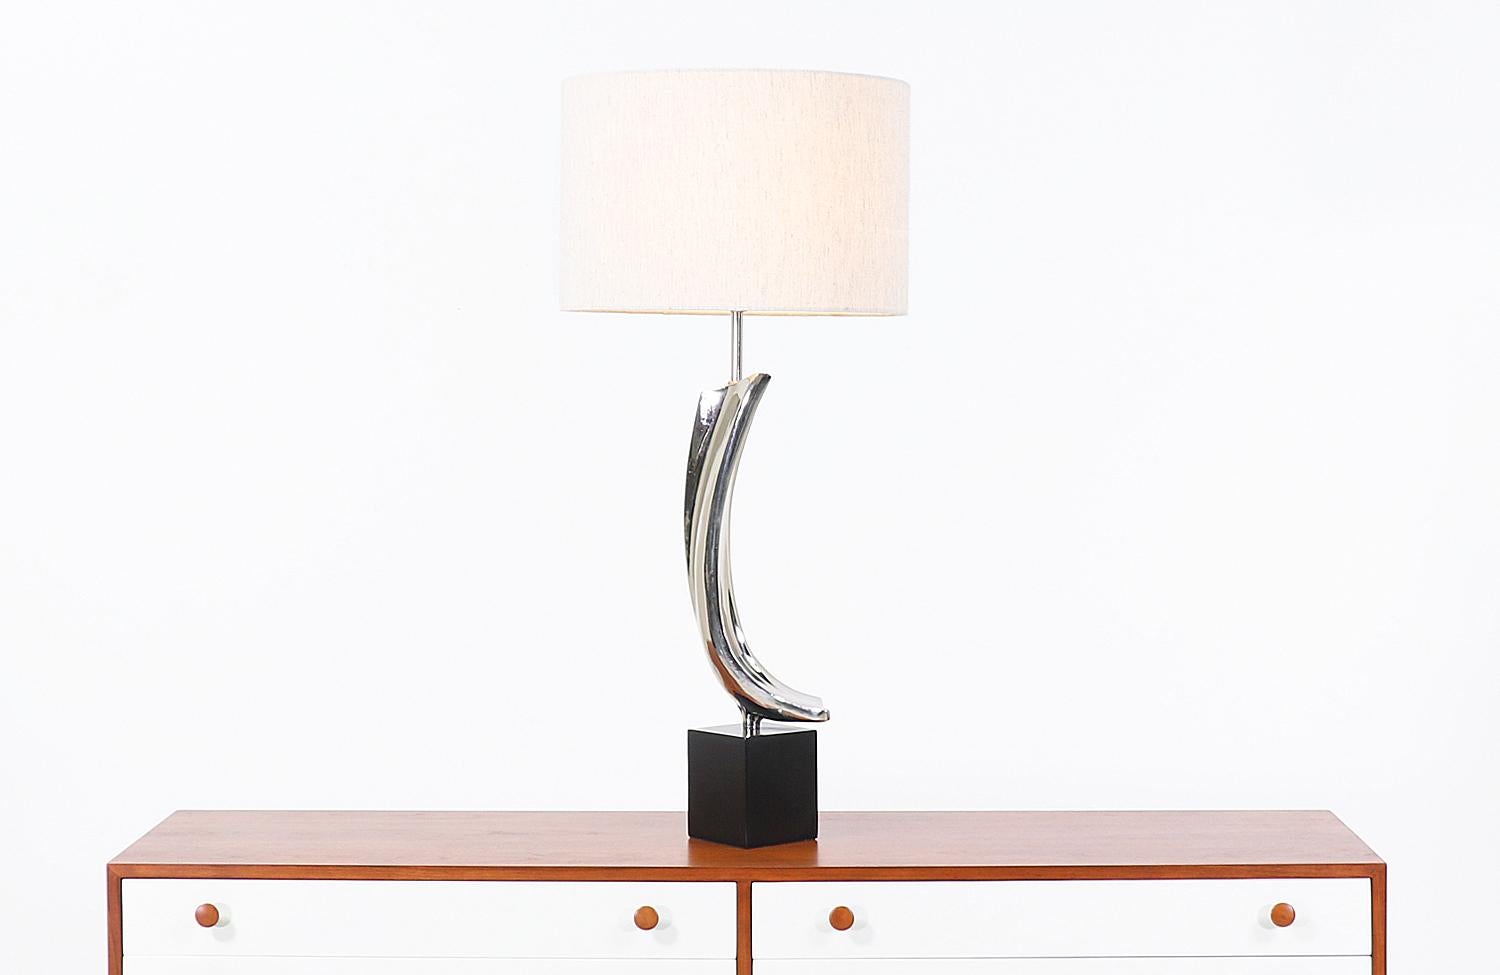 Moderne Tischleuchte, entworfen von Richard Barr und Harold Weiss für Laurel Lamp Co. in den Vereinigten Staaten, ca. 1960er Jahre. Diese einzigartige Tischleuchte hat einen geschwungenen, skulpturalen Körper aus vernickeltem Chrom, der auf einem